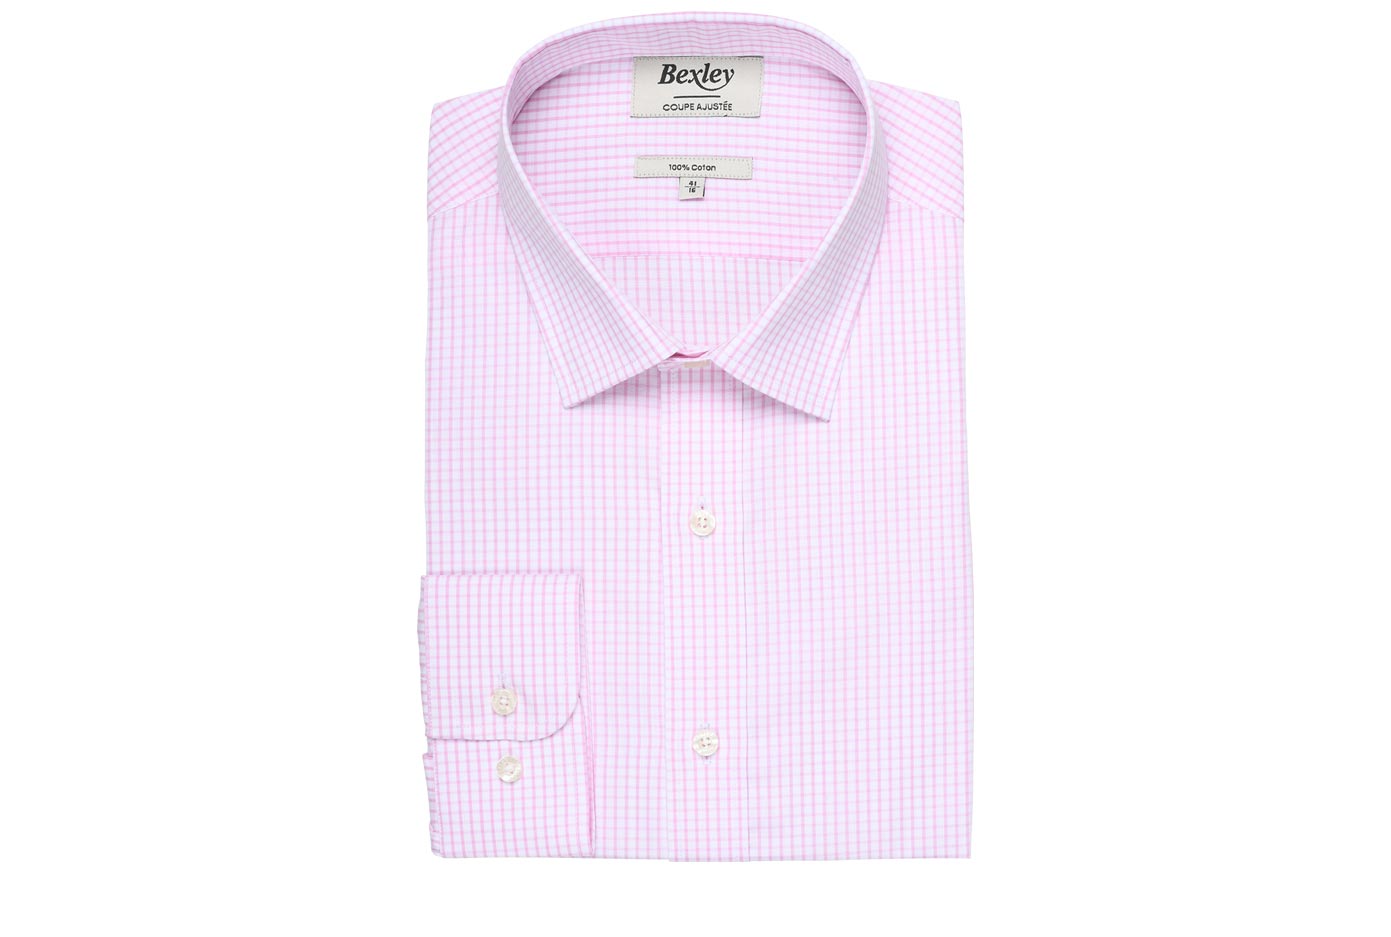 bexley chemise homme 100% coton, rose et blanc, manches longues